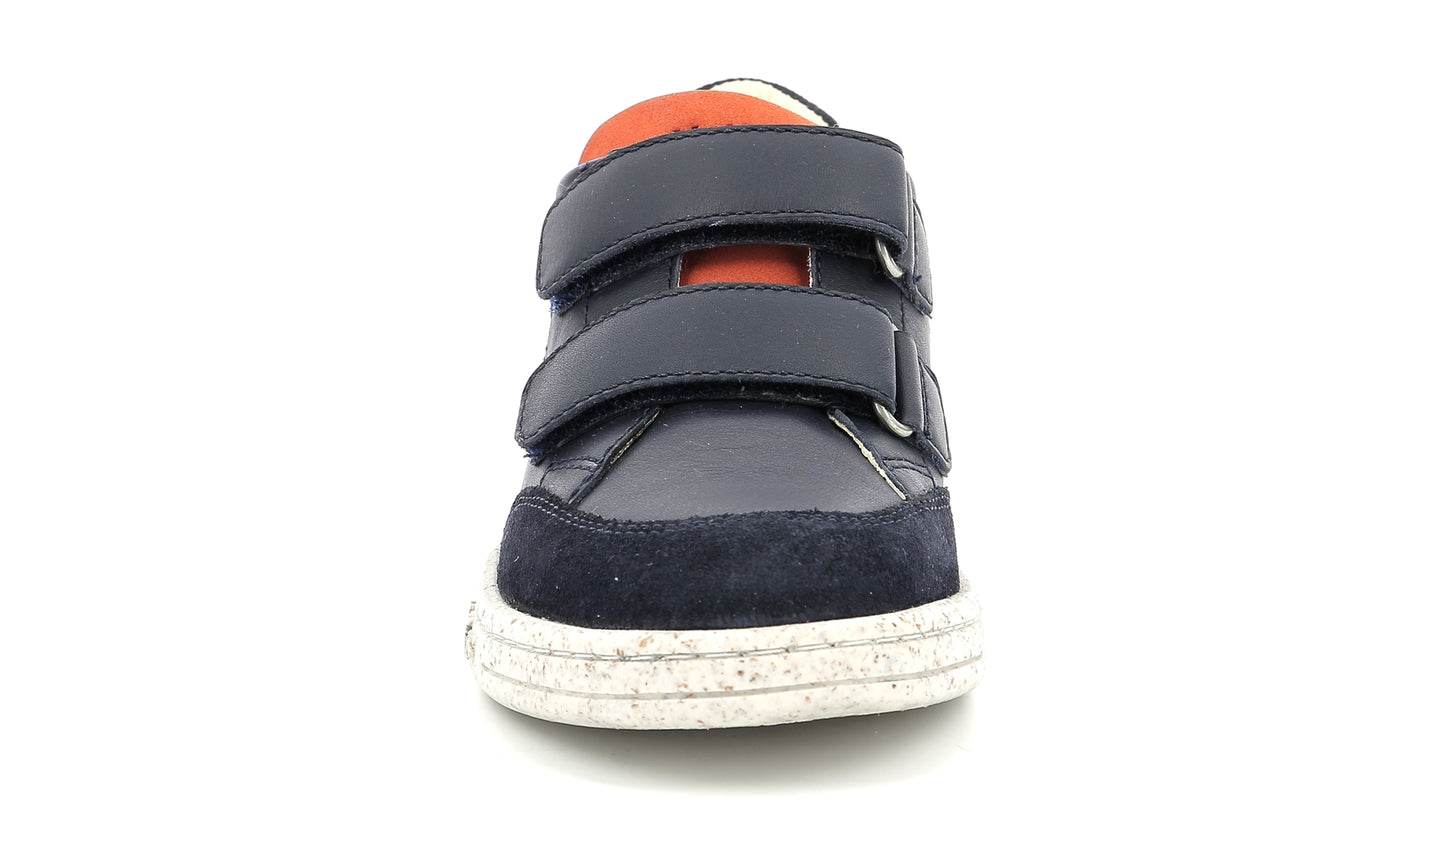 KICKERS TAKAWAY marine orange Chaussures Basses/Baskets/Sneakers